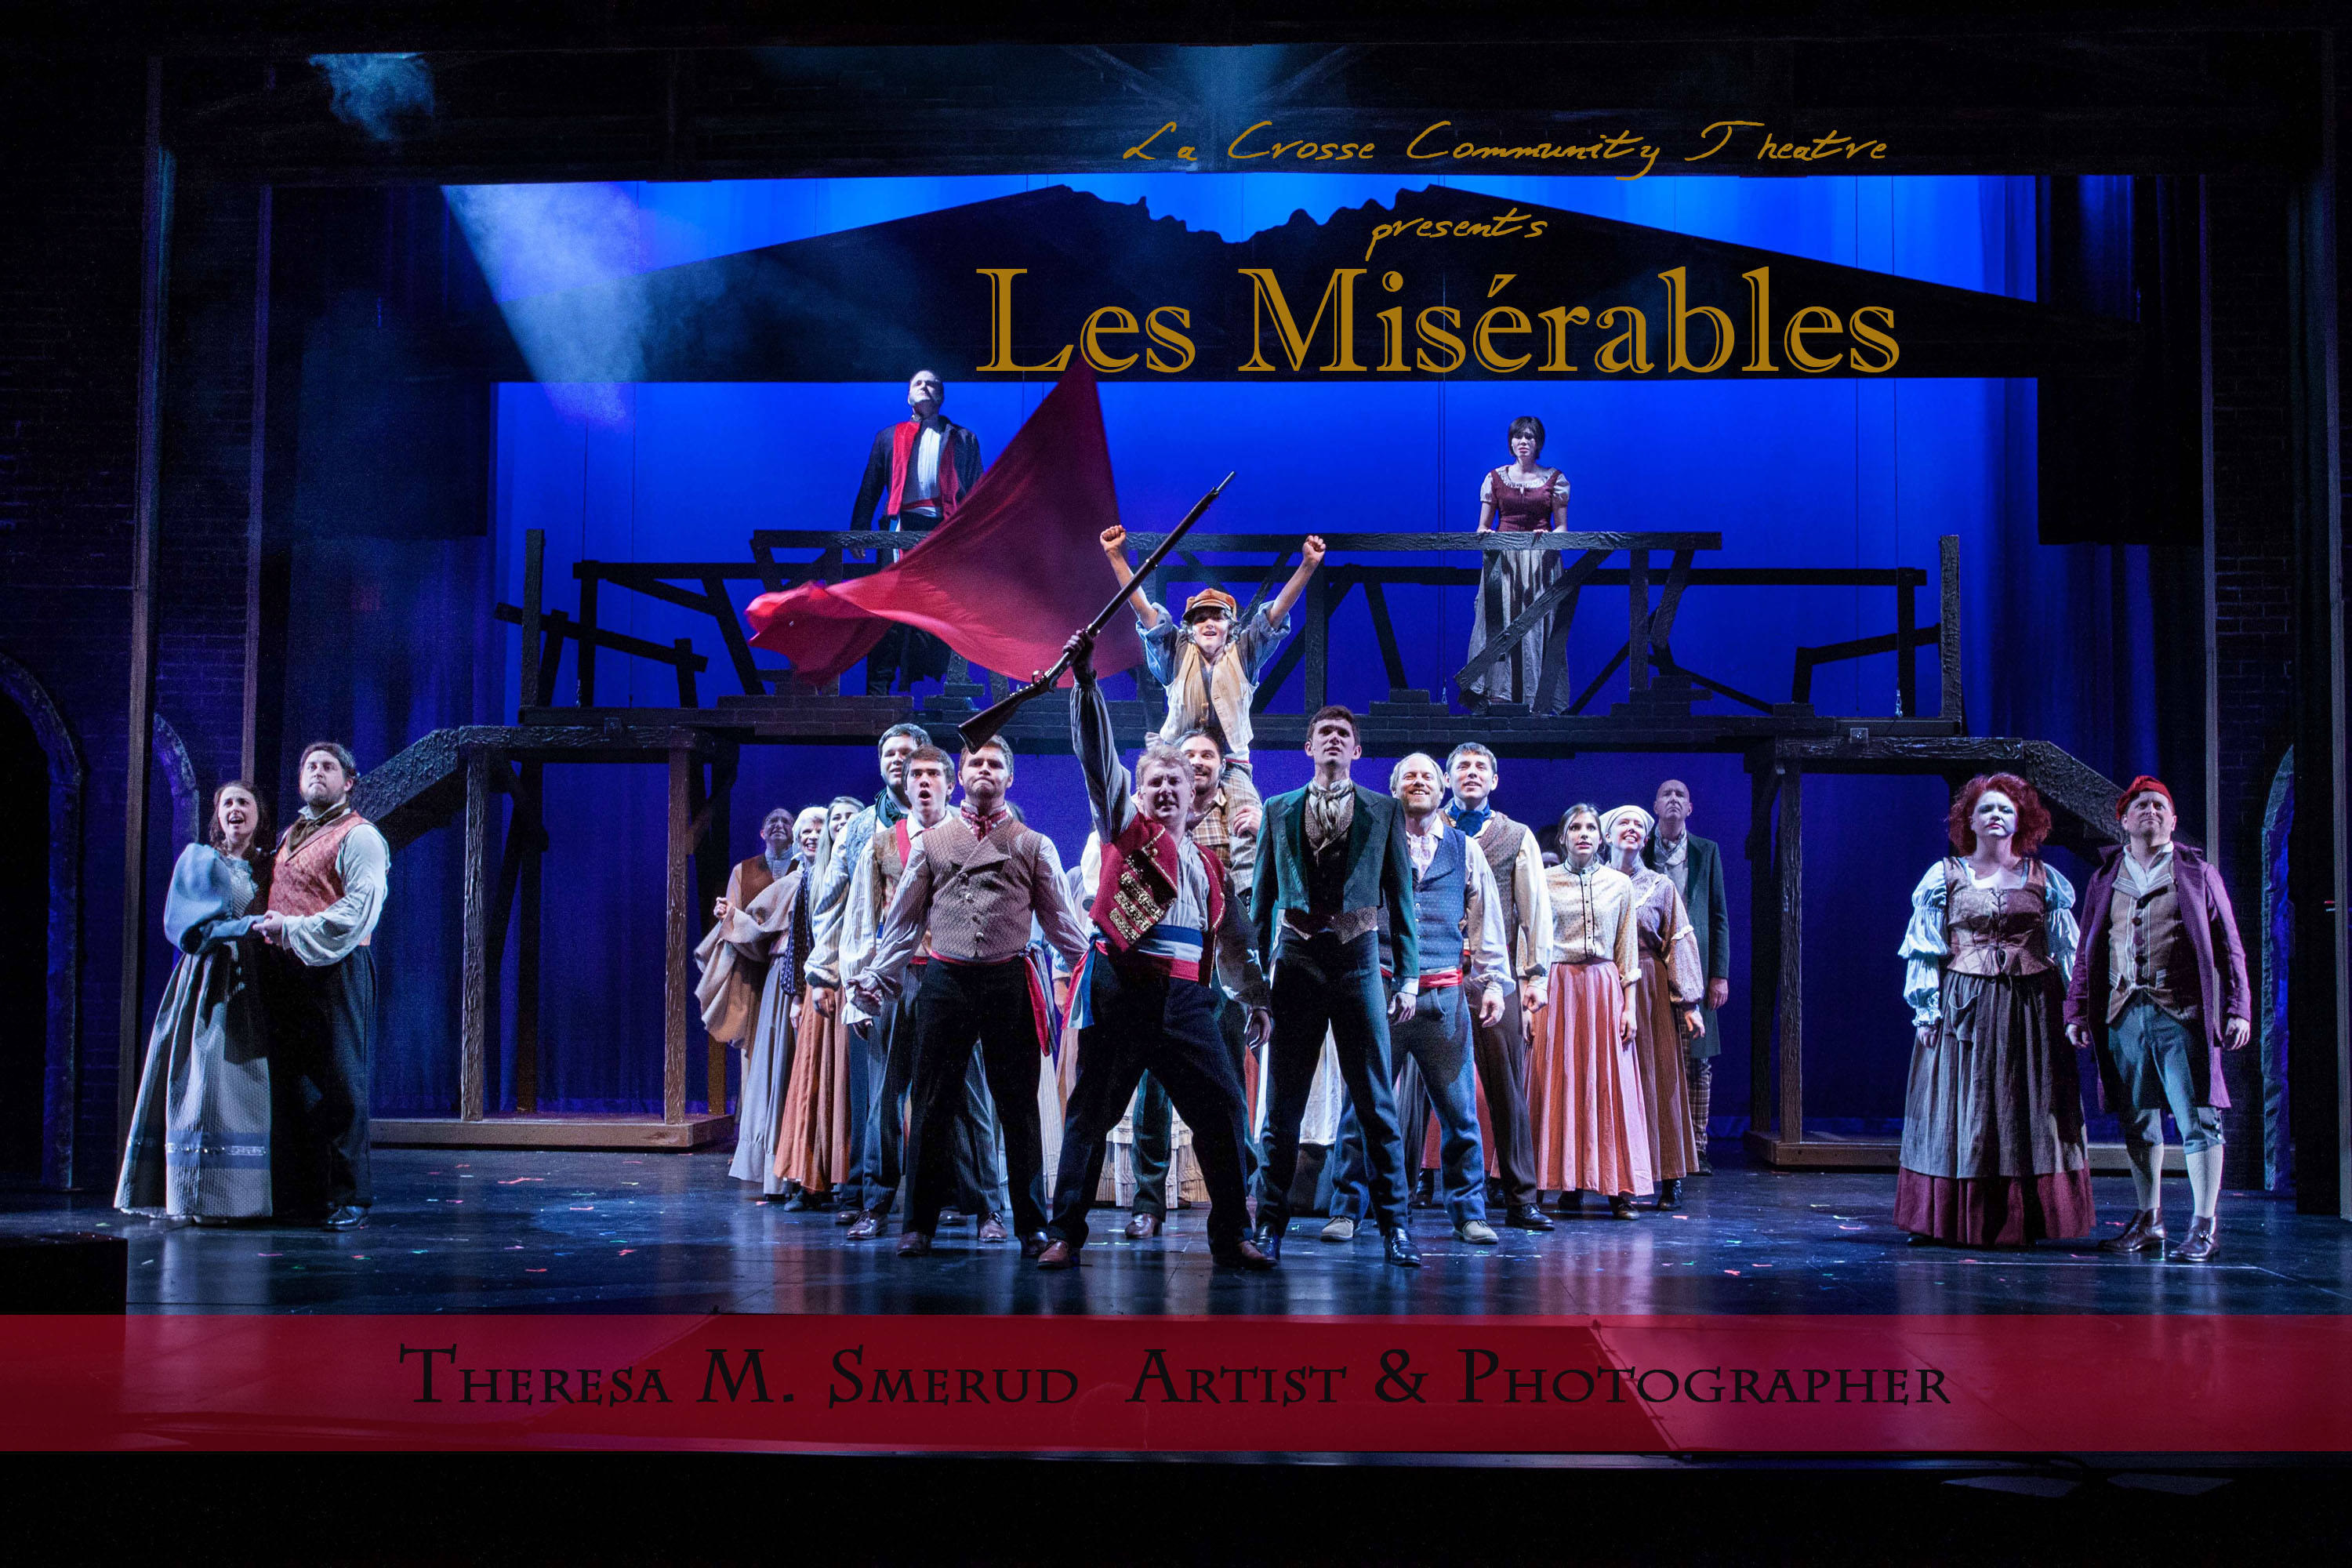 La Crosse Community Theatre Presents Les Miserables